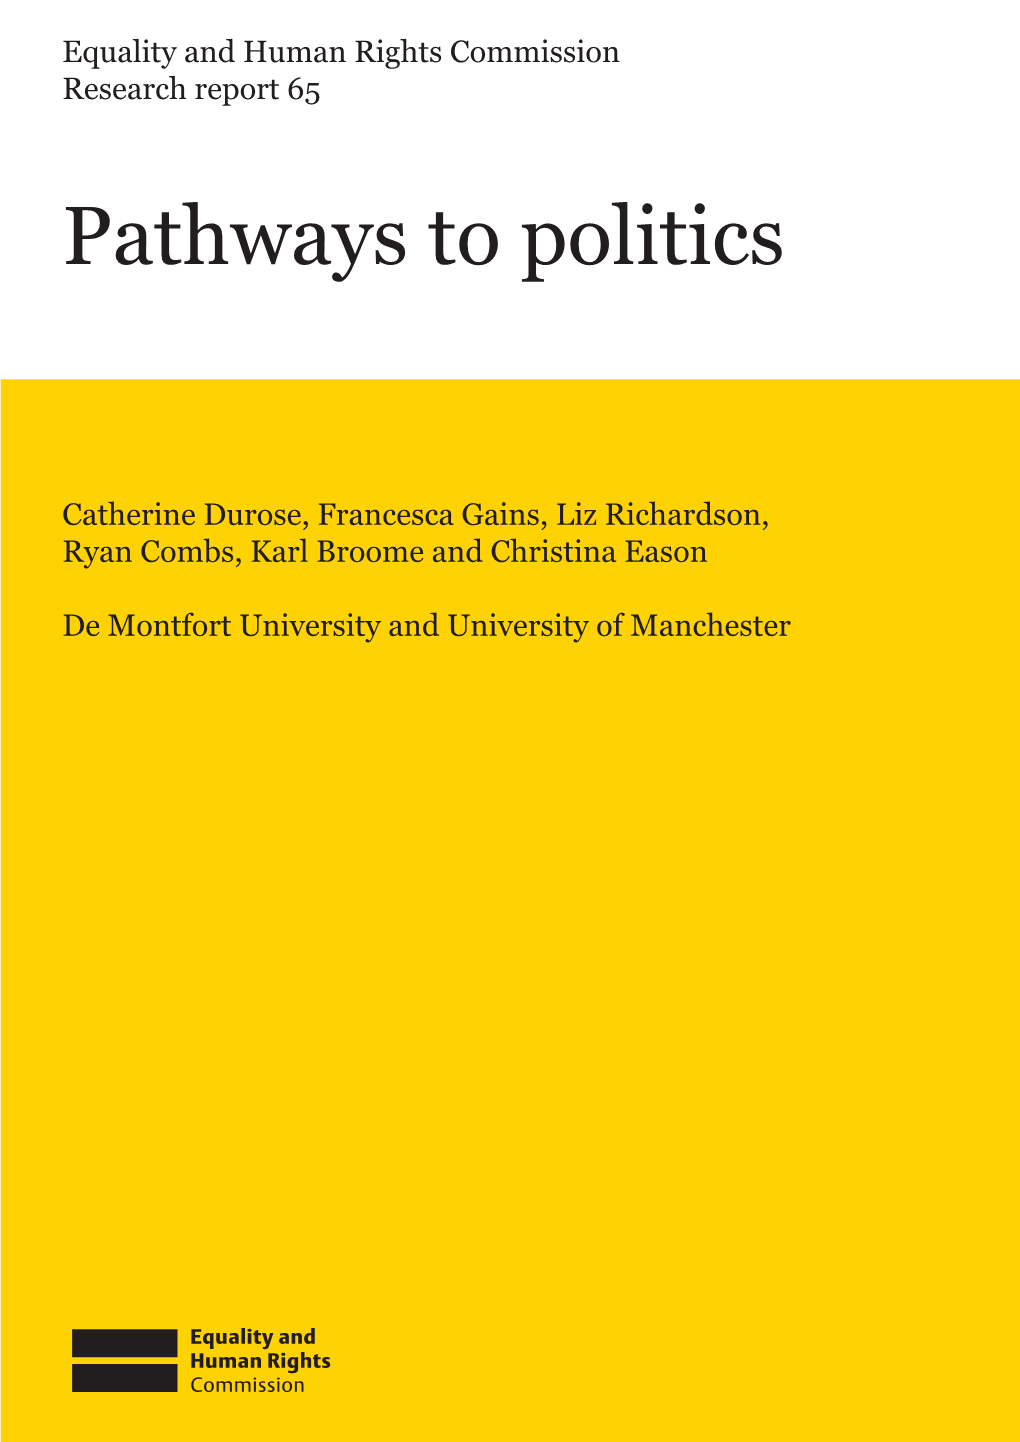 Pathways to Politics